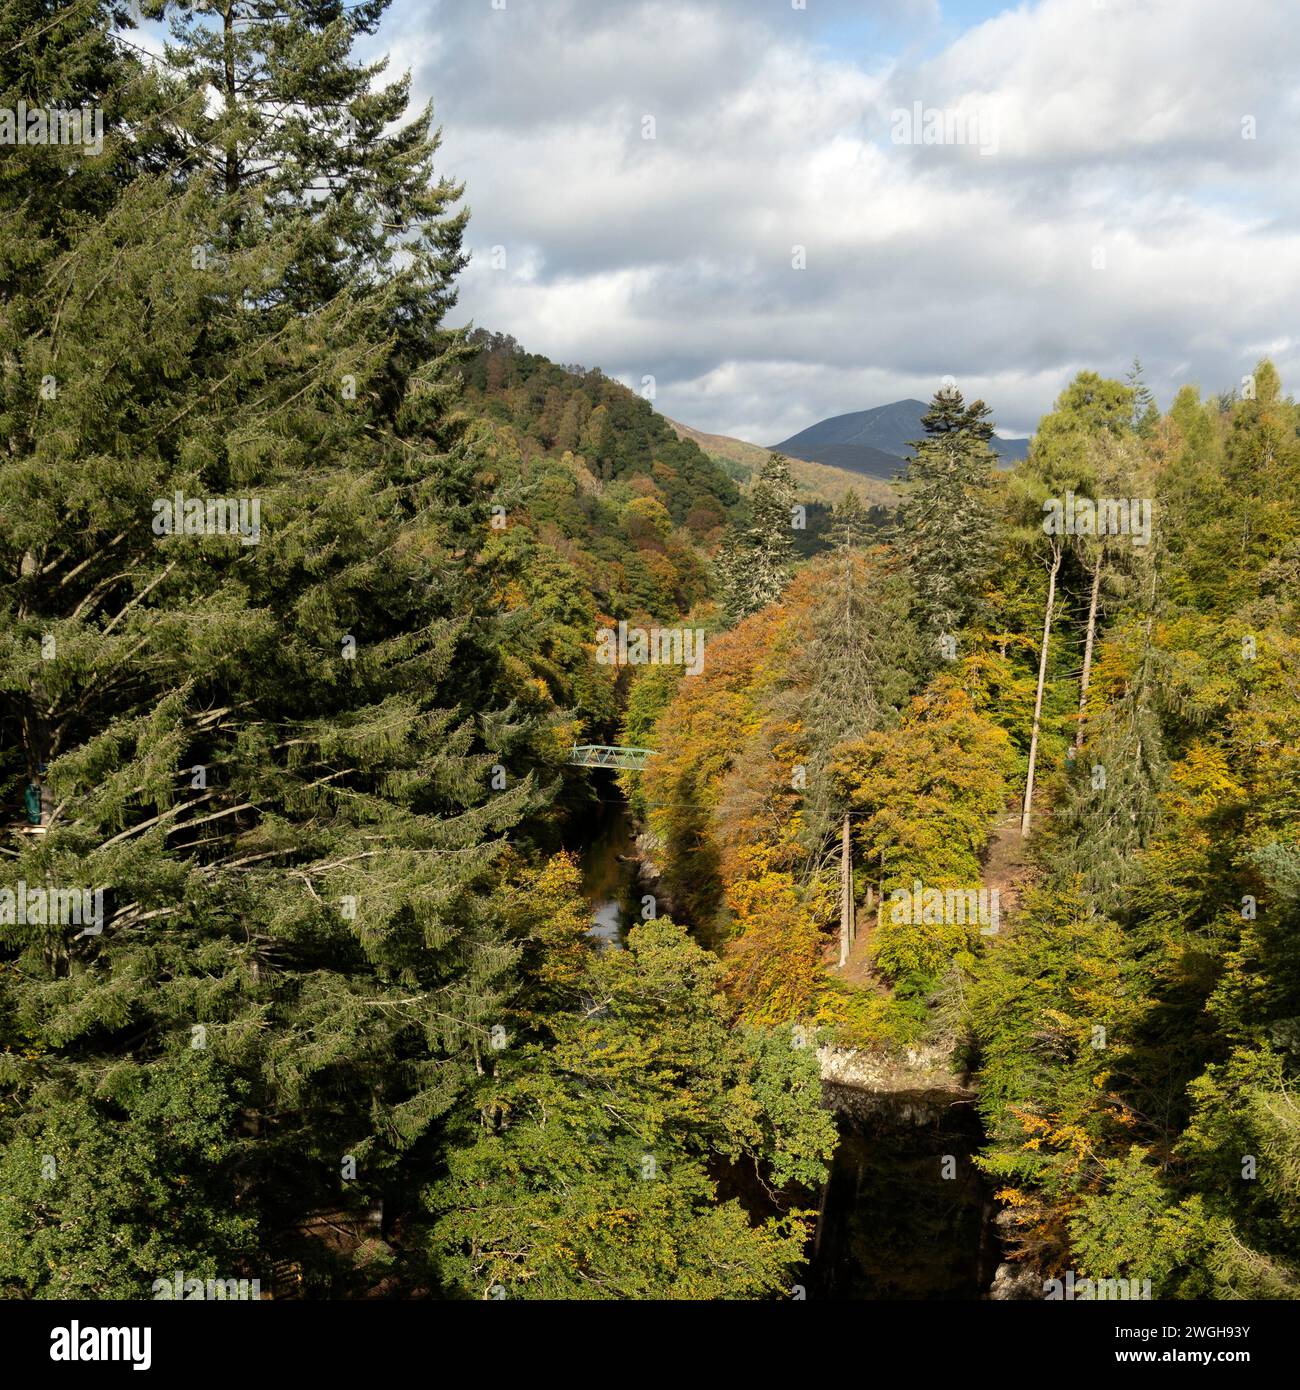 Herbstfarbe in den Wäldern der Garry Bridge in der Nähe von Pitlochry, Schottland. Stockfoto